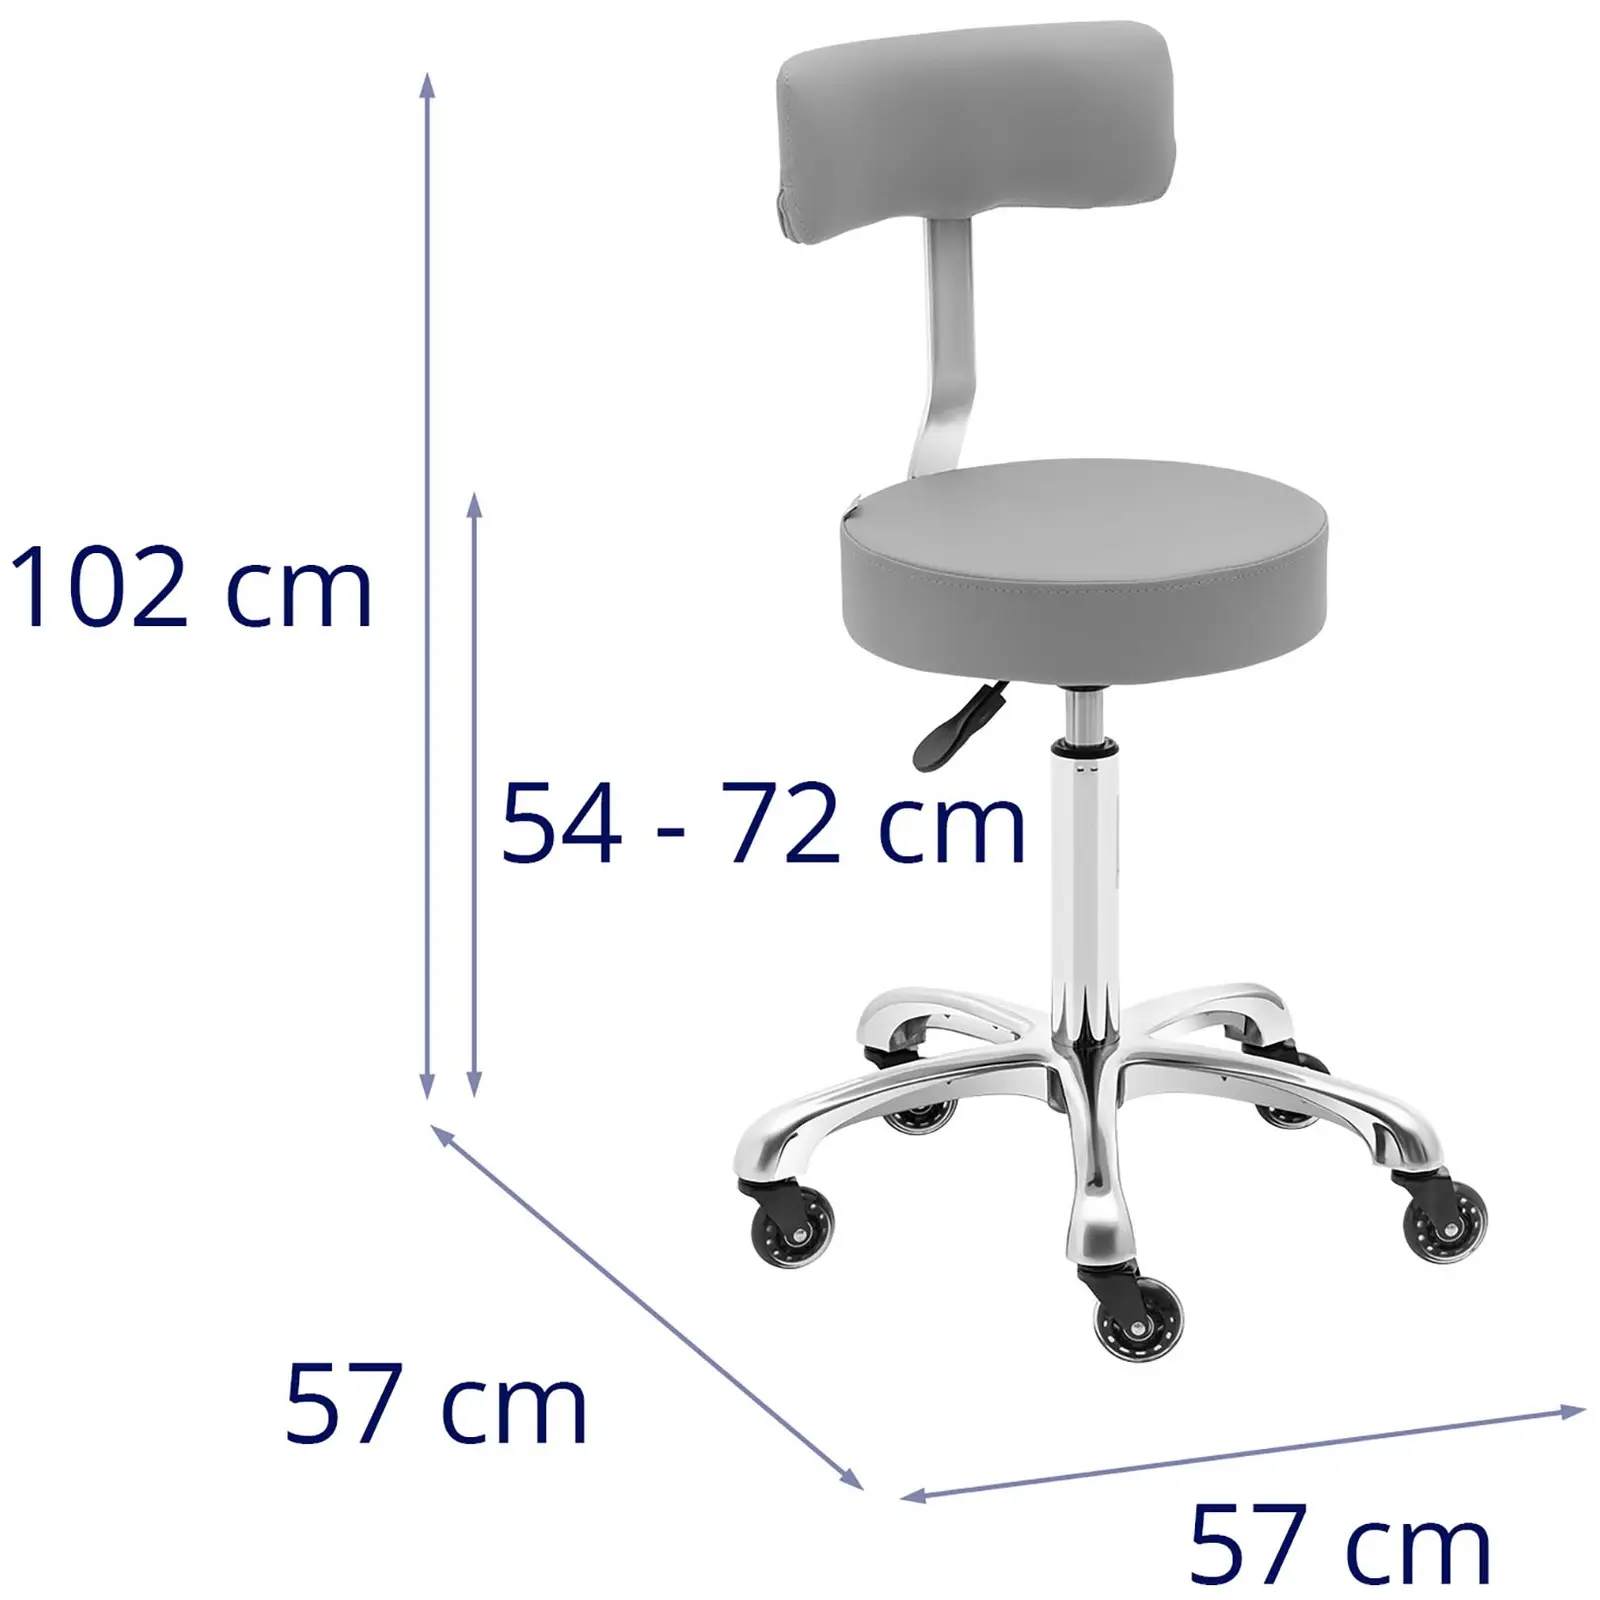 Arbejdsstol med hjul - 540 - 720 mm - mørkegrå